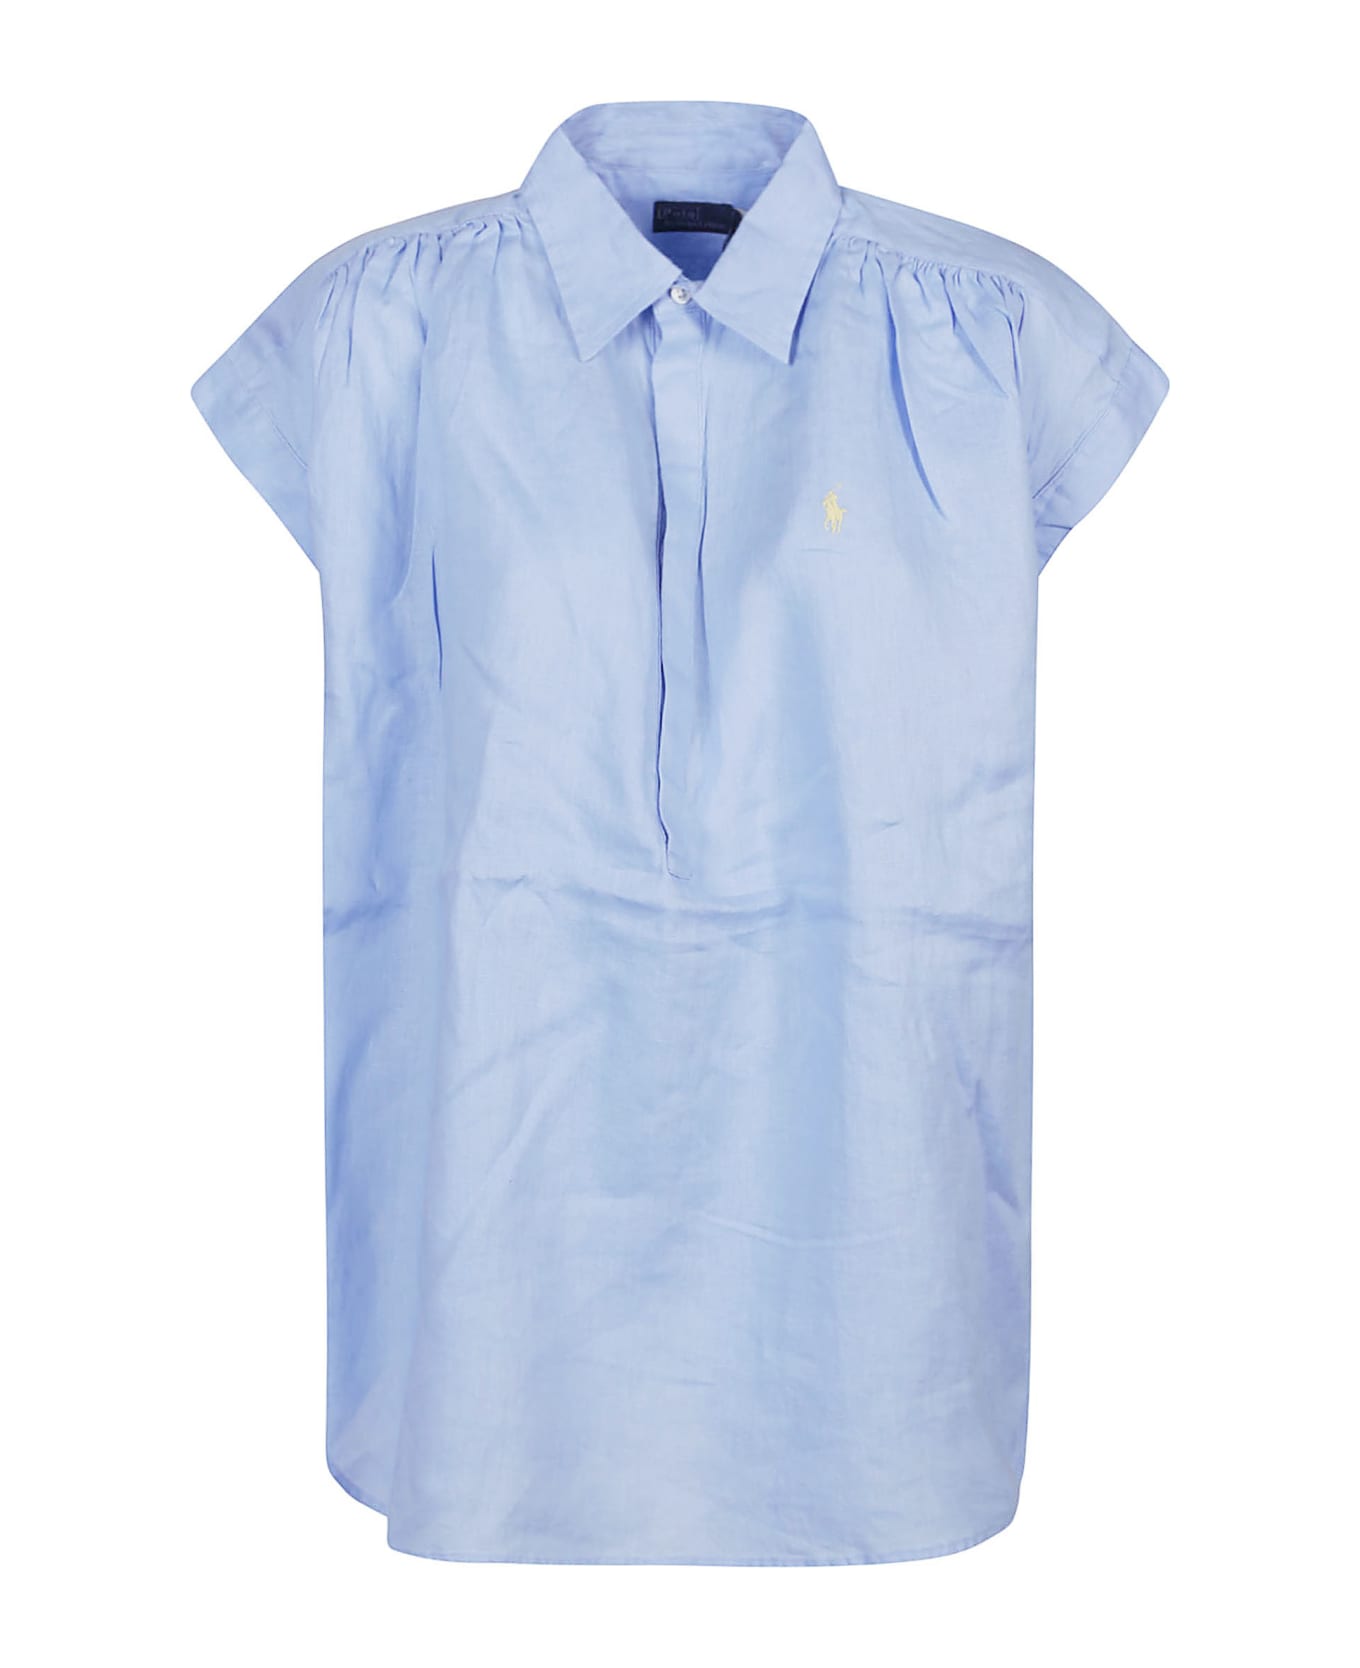 Polo Ralph Lauren Short Sleeve Button Front Shirt - Austin Blue